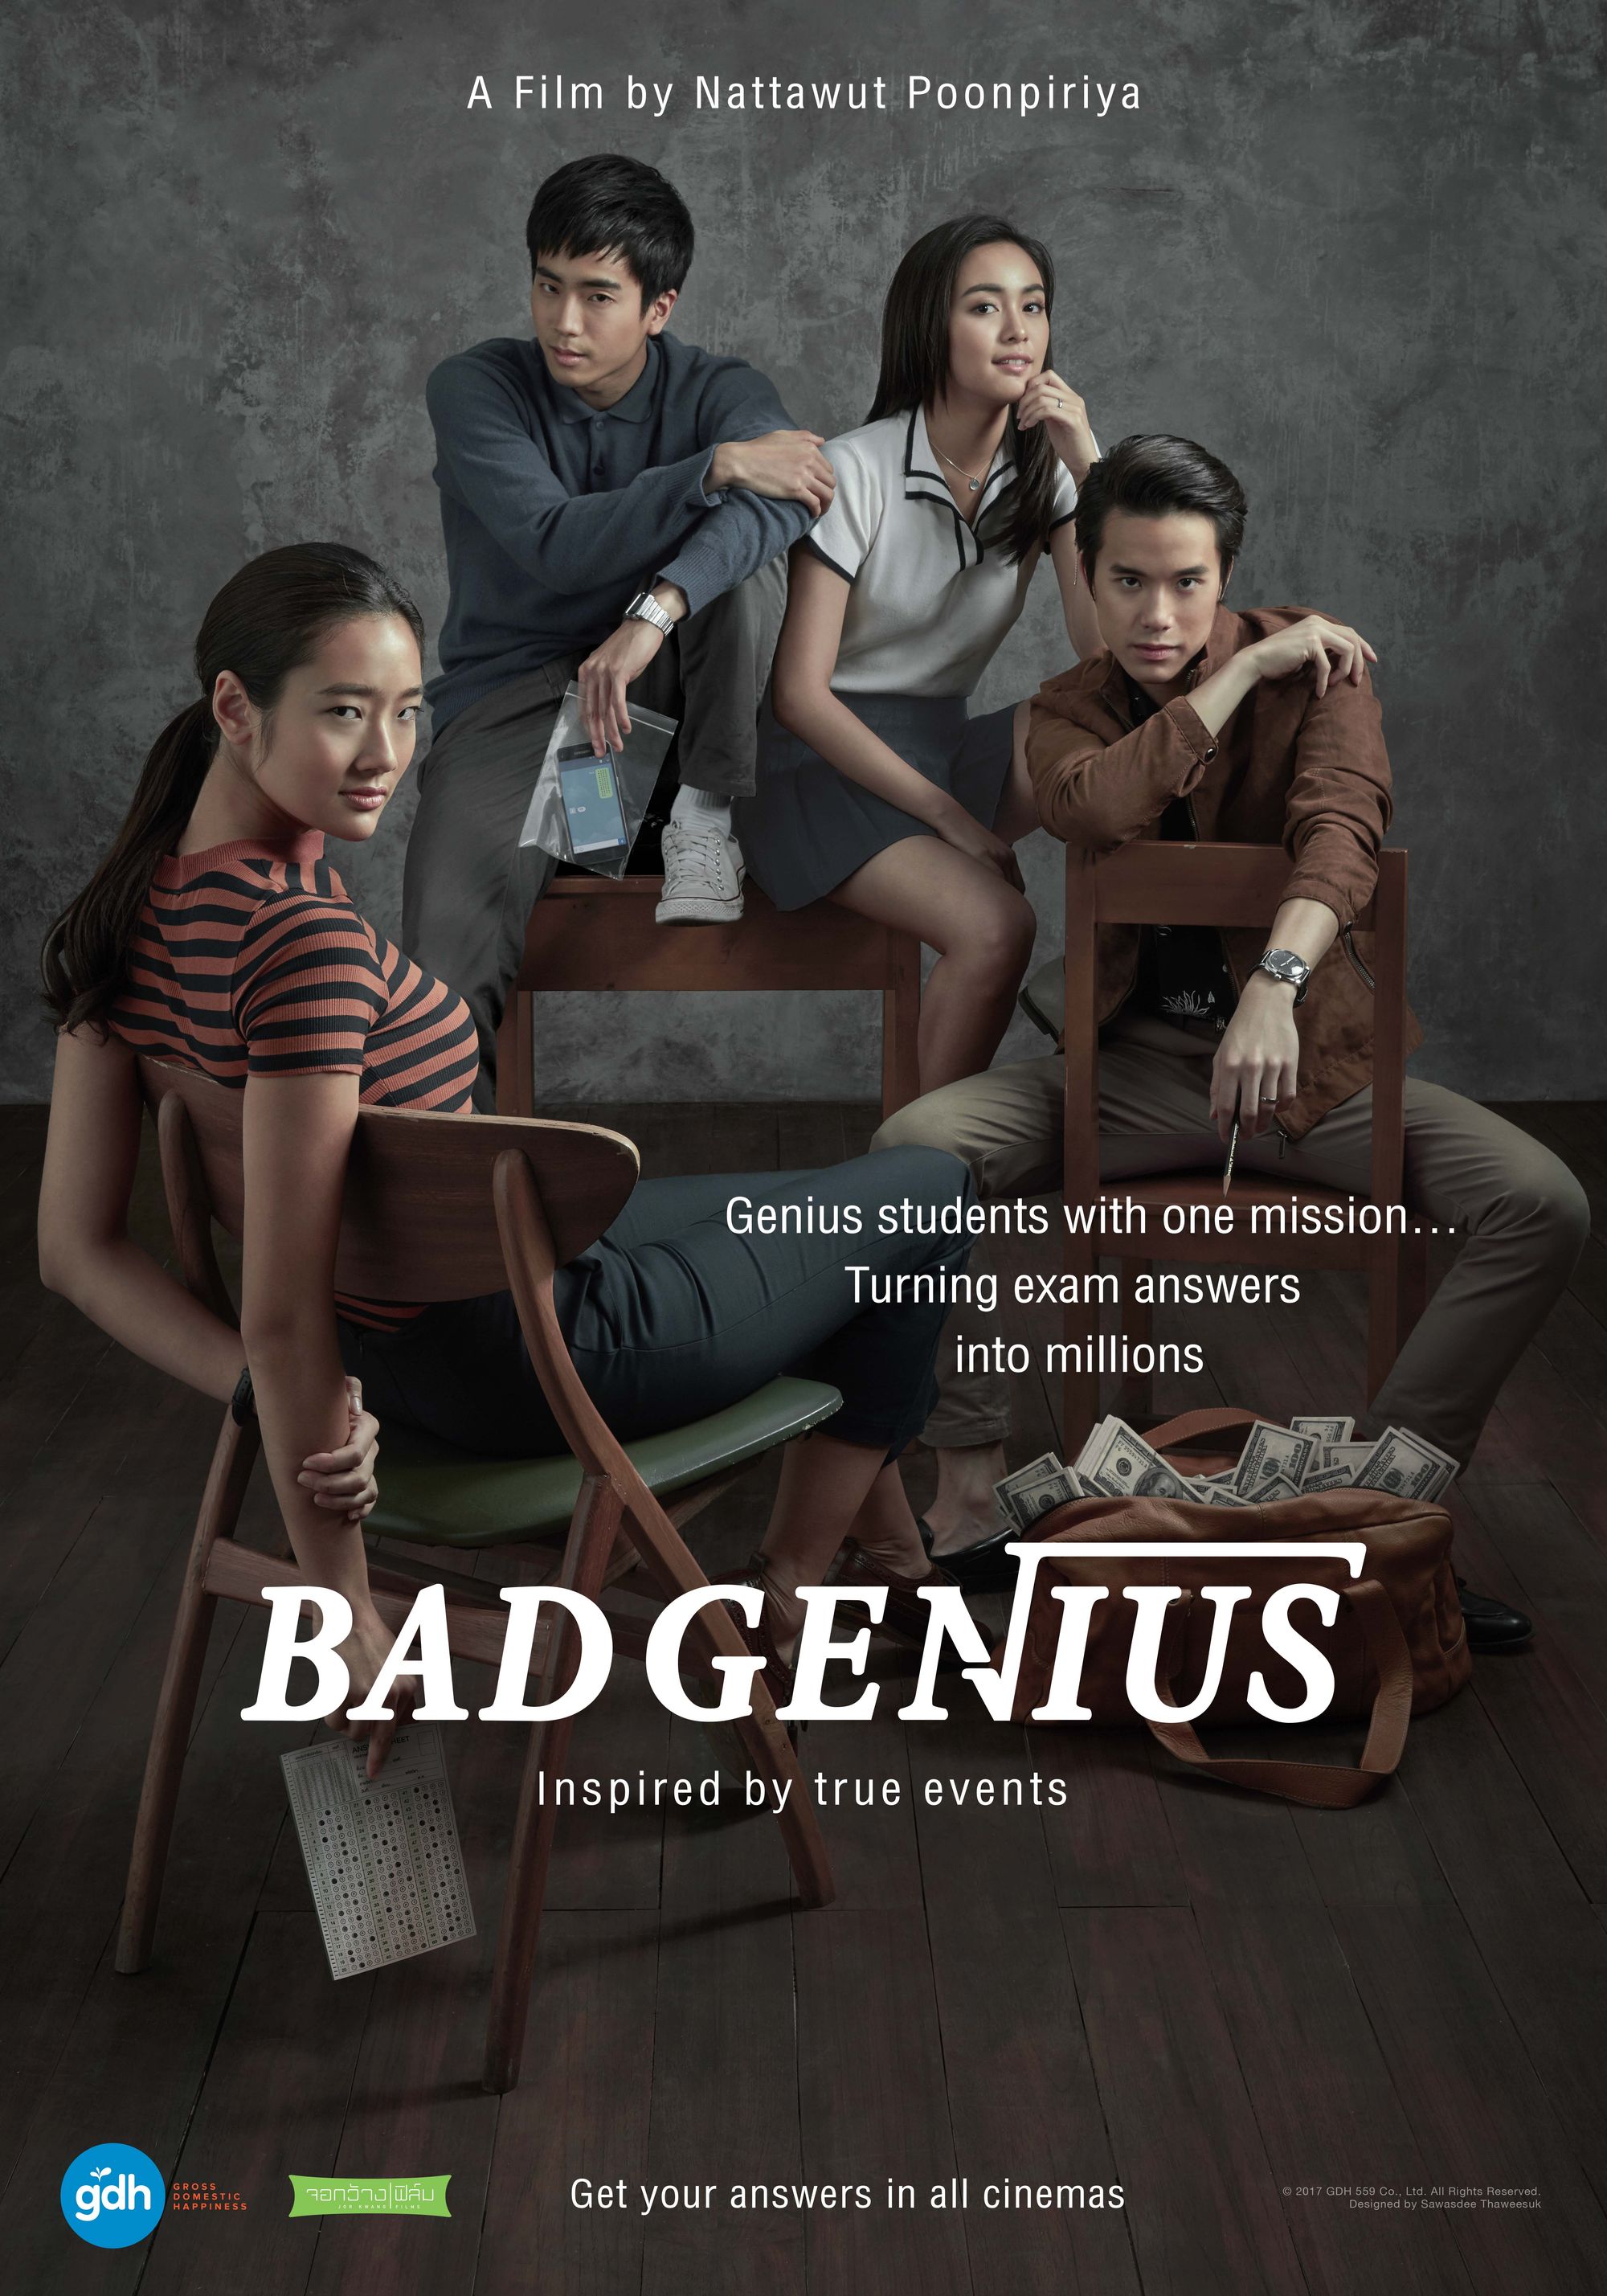 จริงใจและเคลื่อนไหว: 'Bad Genius' นิยามใหม่ของประเภทโจรกรรมในโรงภาพยนตร์ไทย